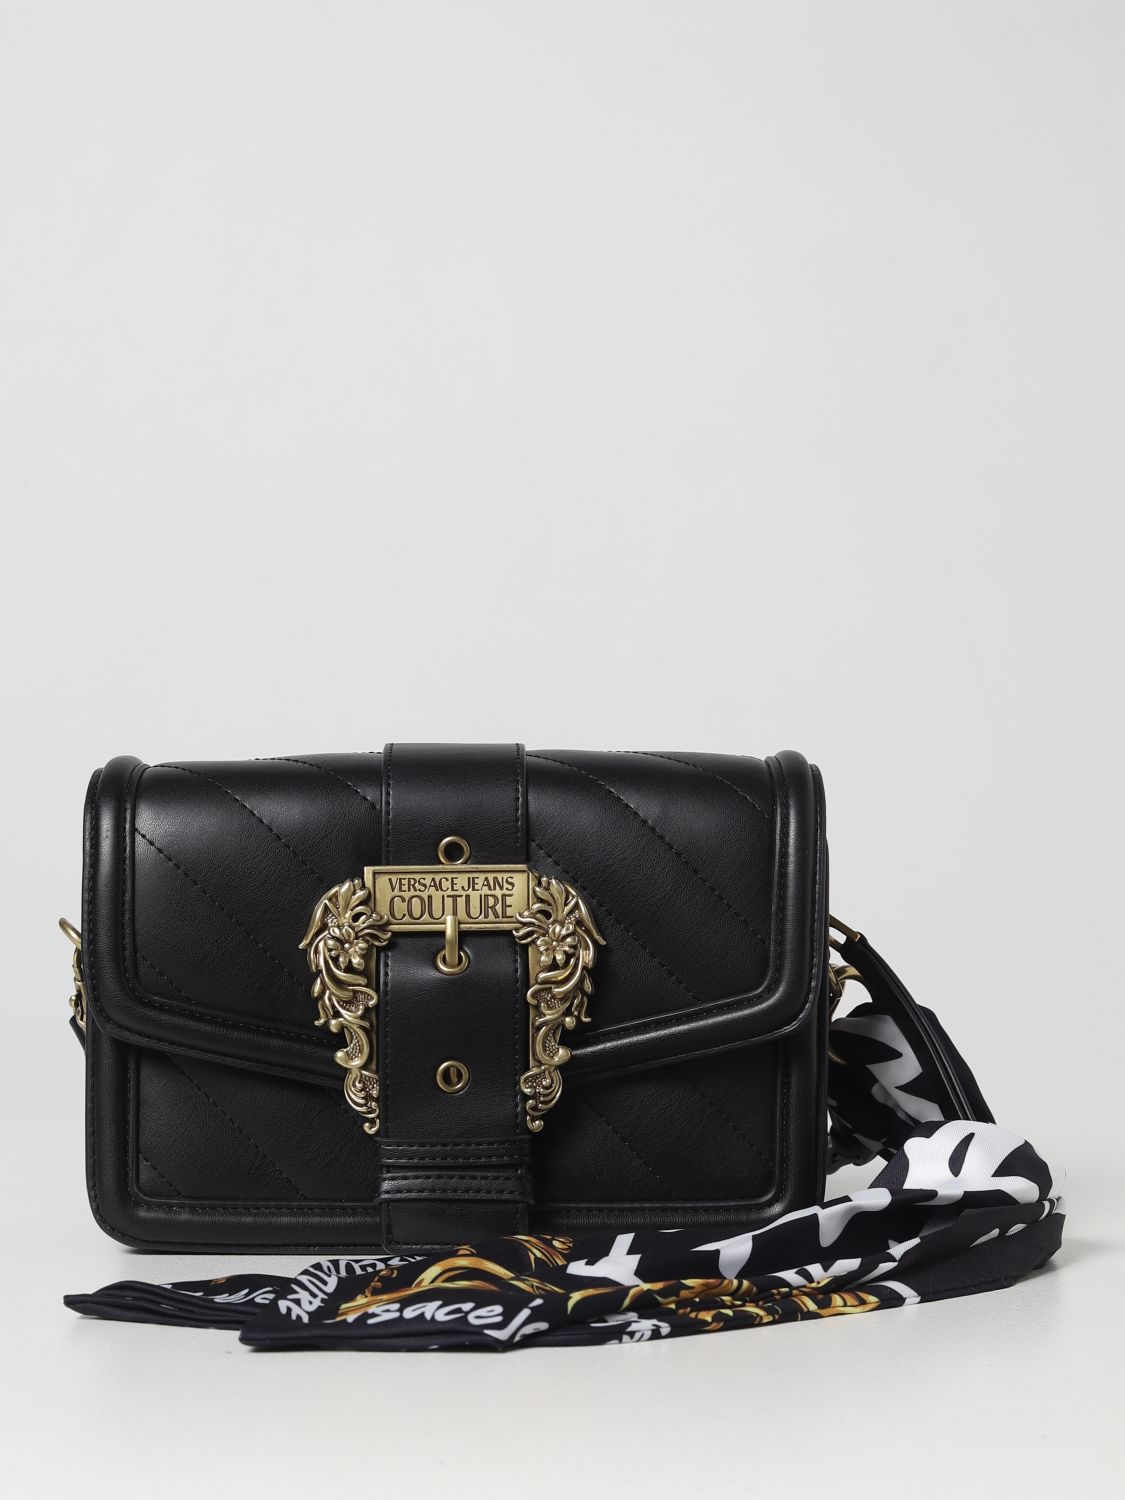 Versace jeans couture black large handbag